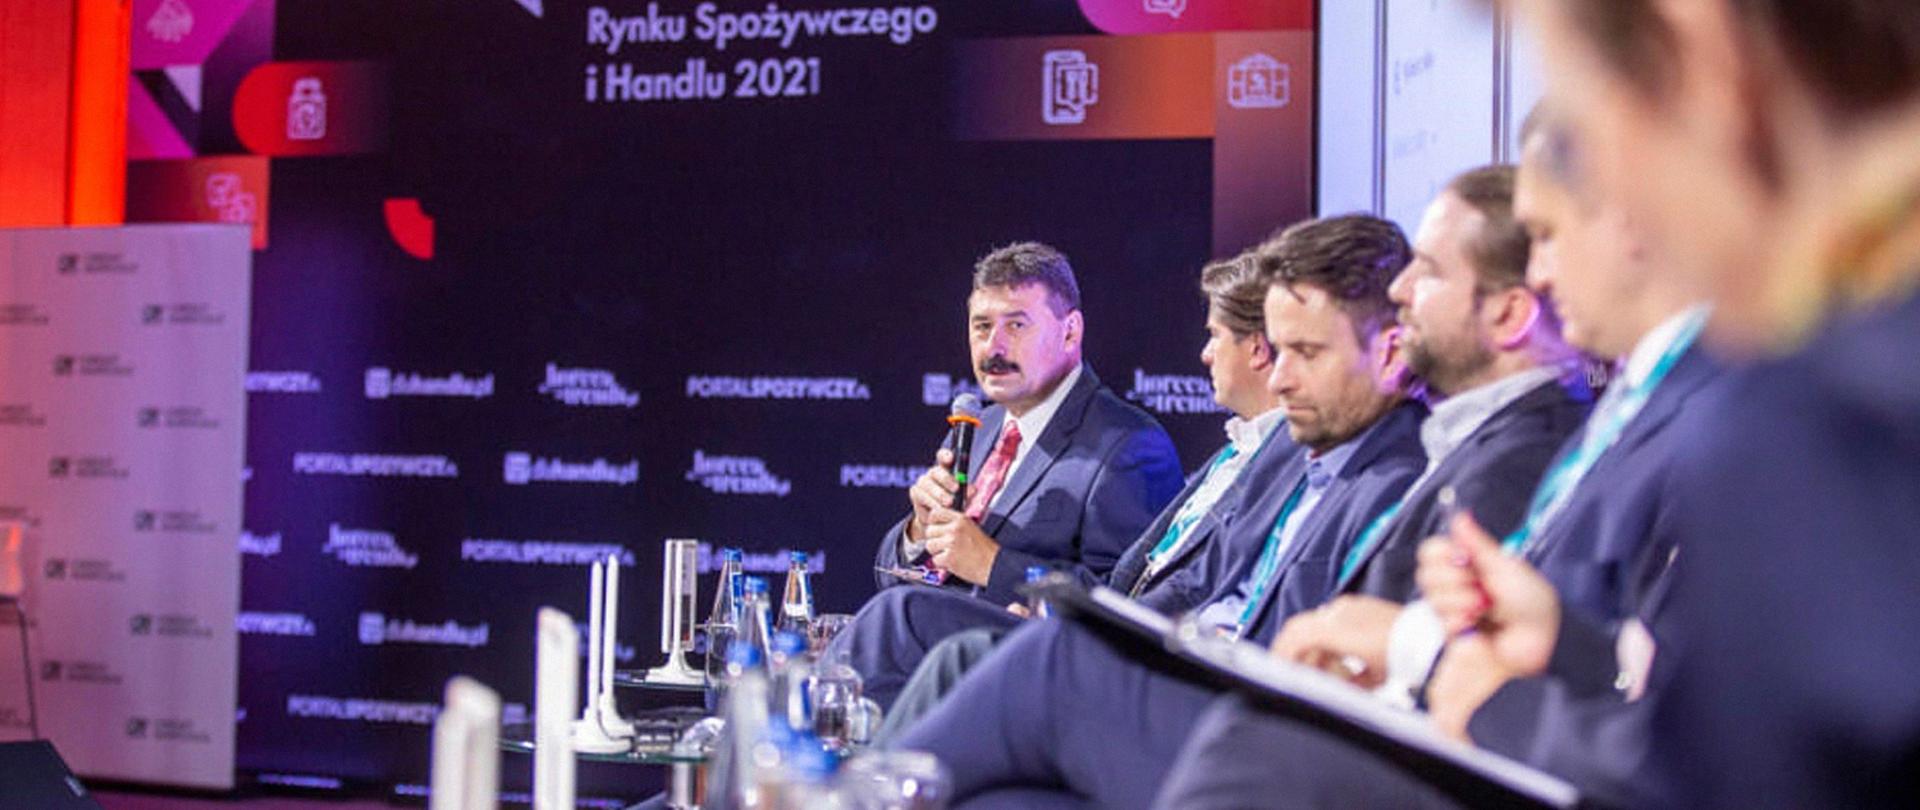 Sekretarz stanu Ryszard Bartosik z mikrofonem w dłoniach, siedzący wśród uczestników Forum Rynku Spożywczego i Handlu 2021.